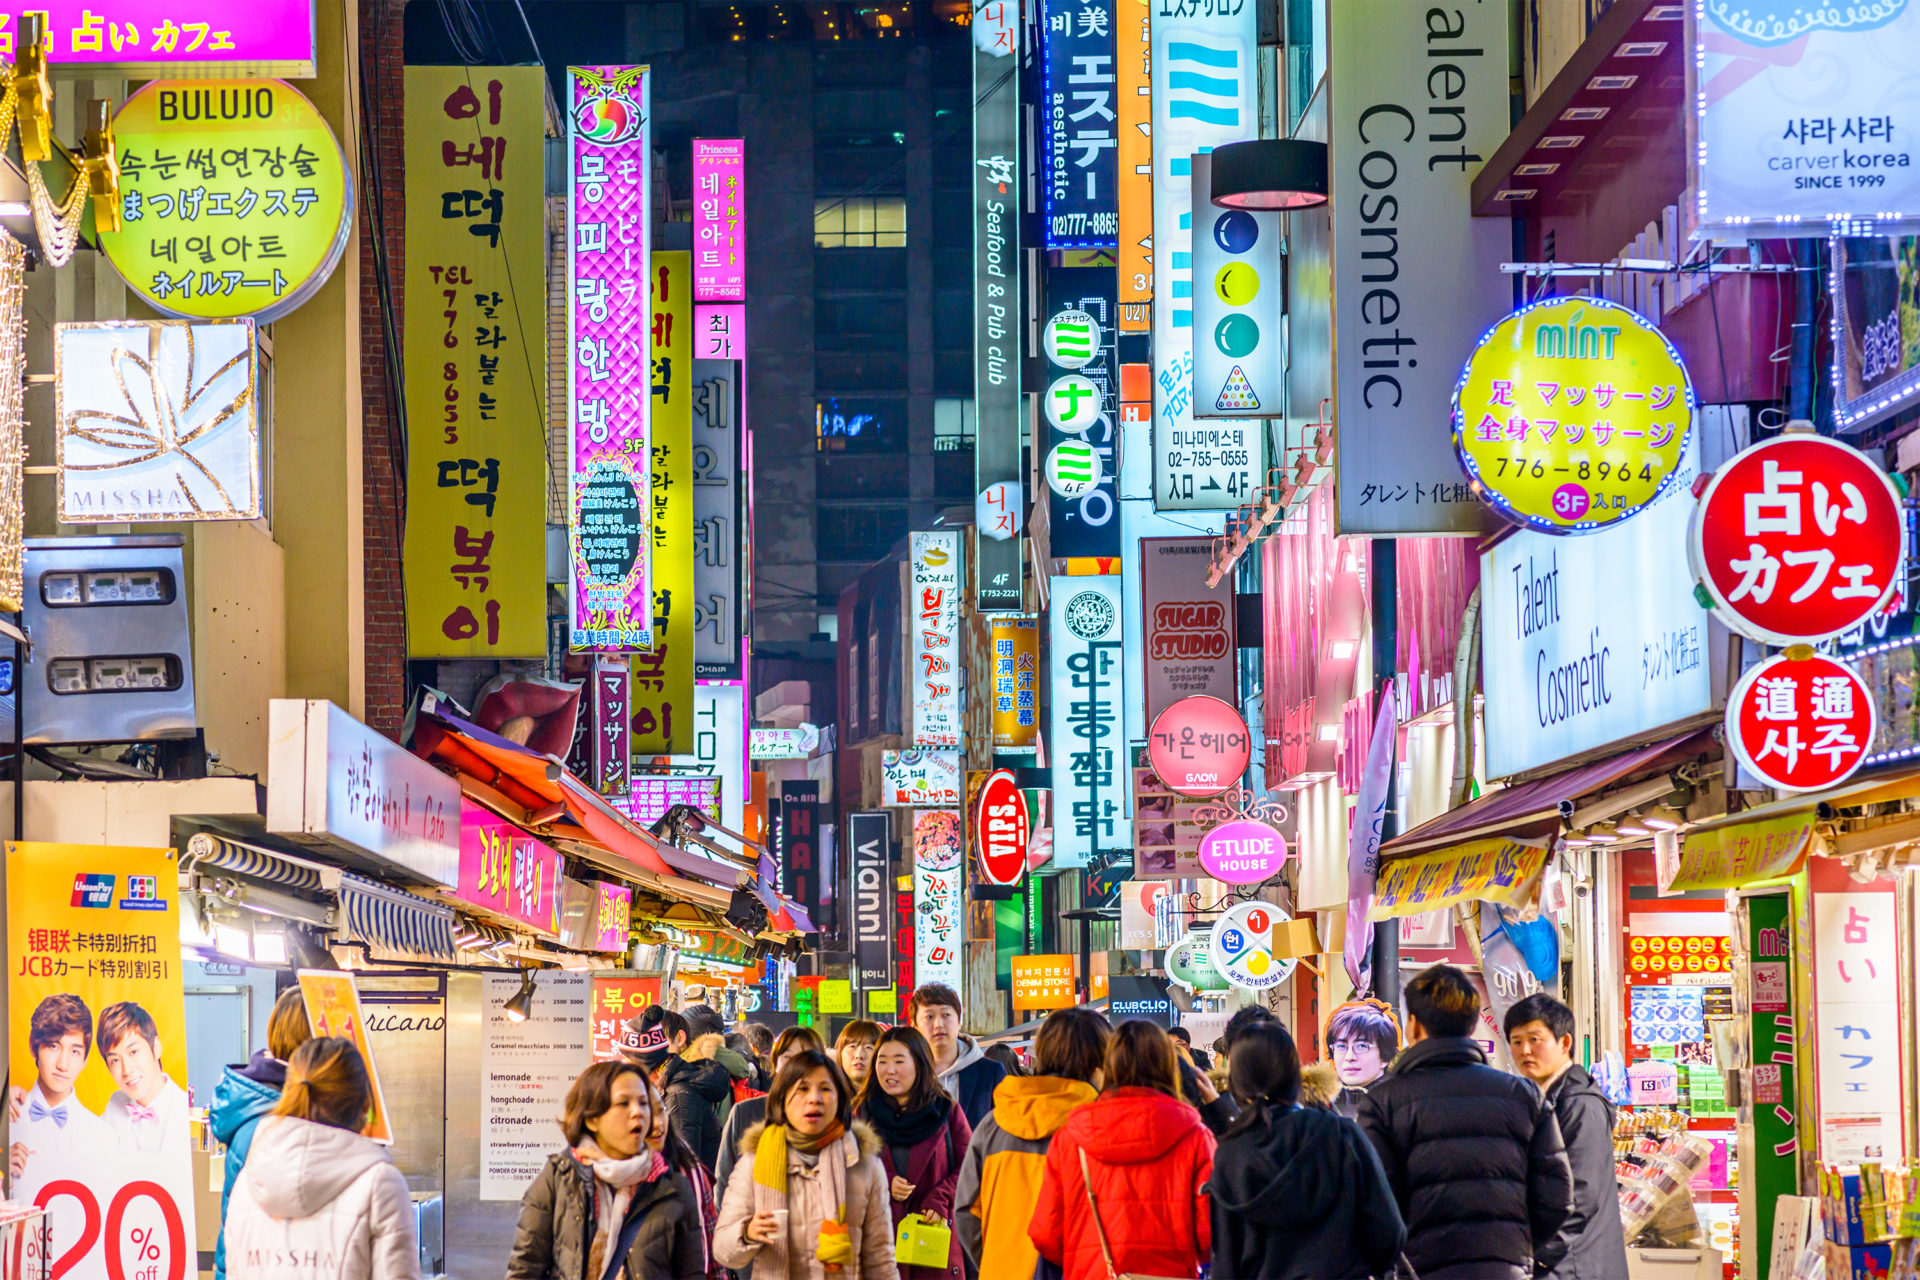 Αποτέλεσμα εικόνας για Seoul Tourism Organization plans to attract Chinese tourists to increase tourism revenue